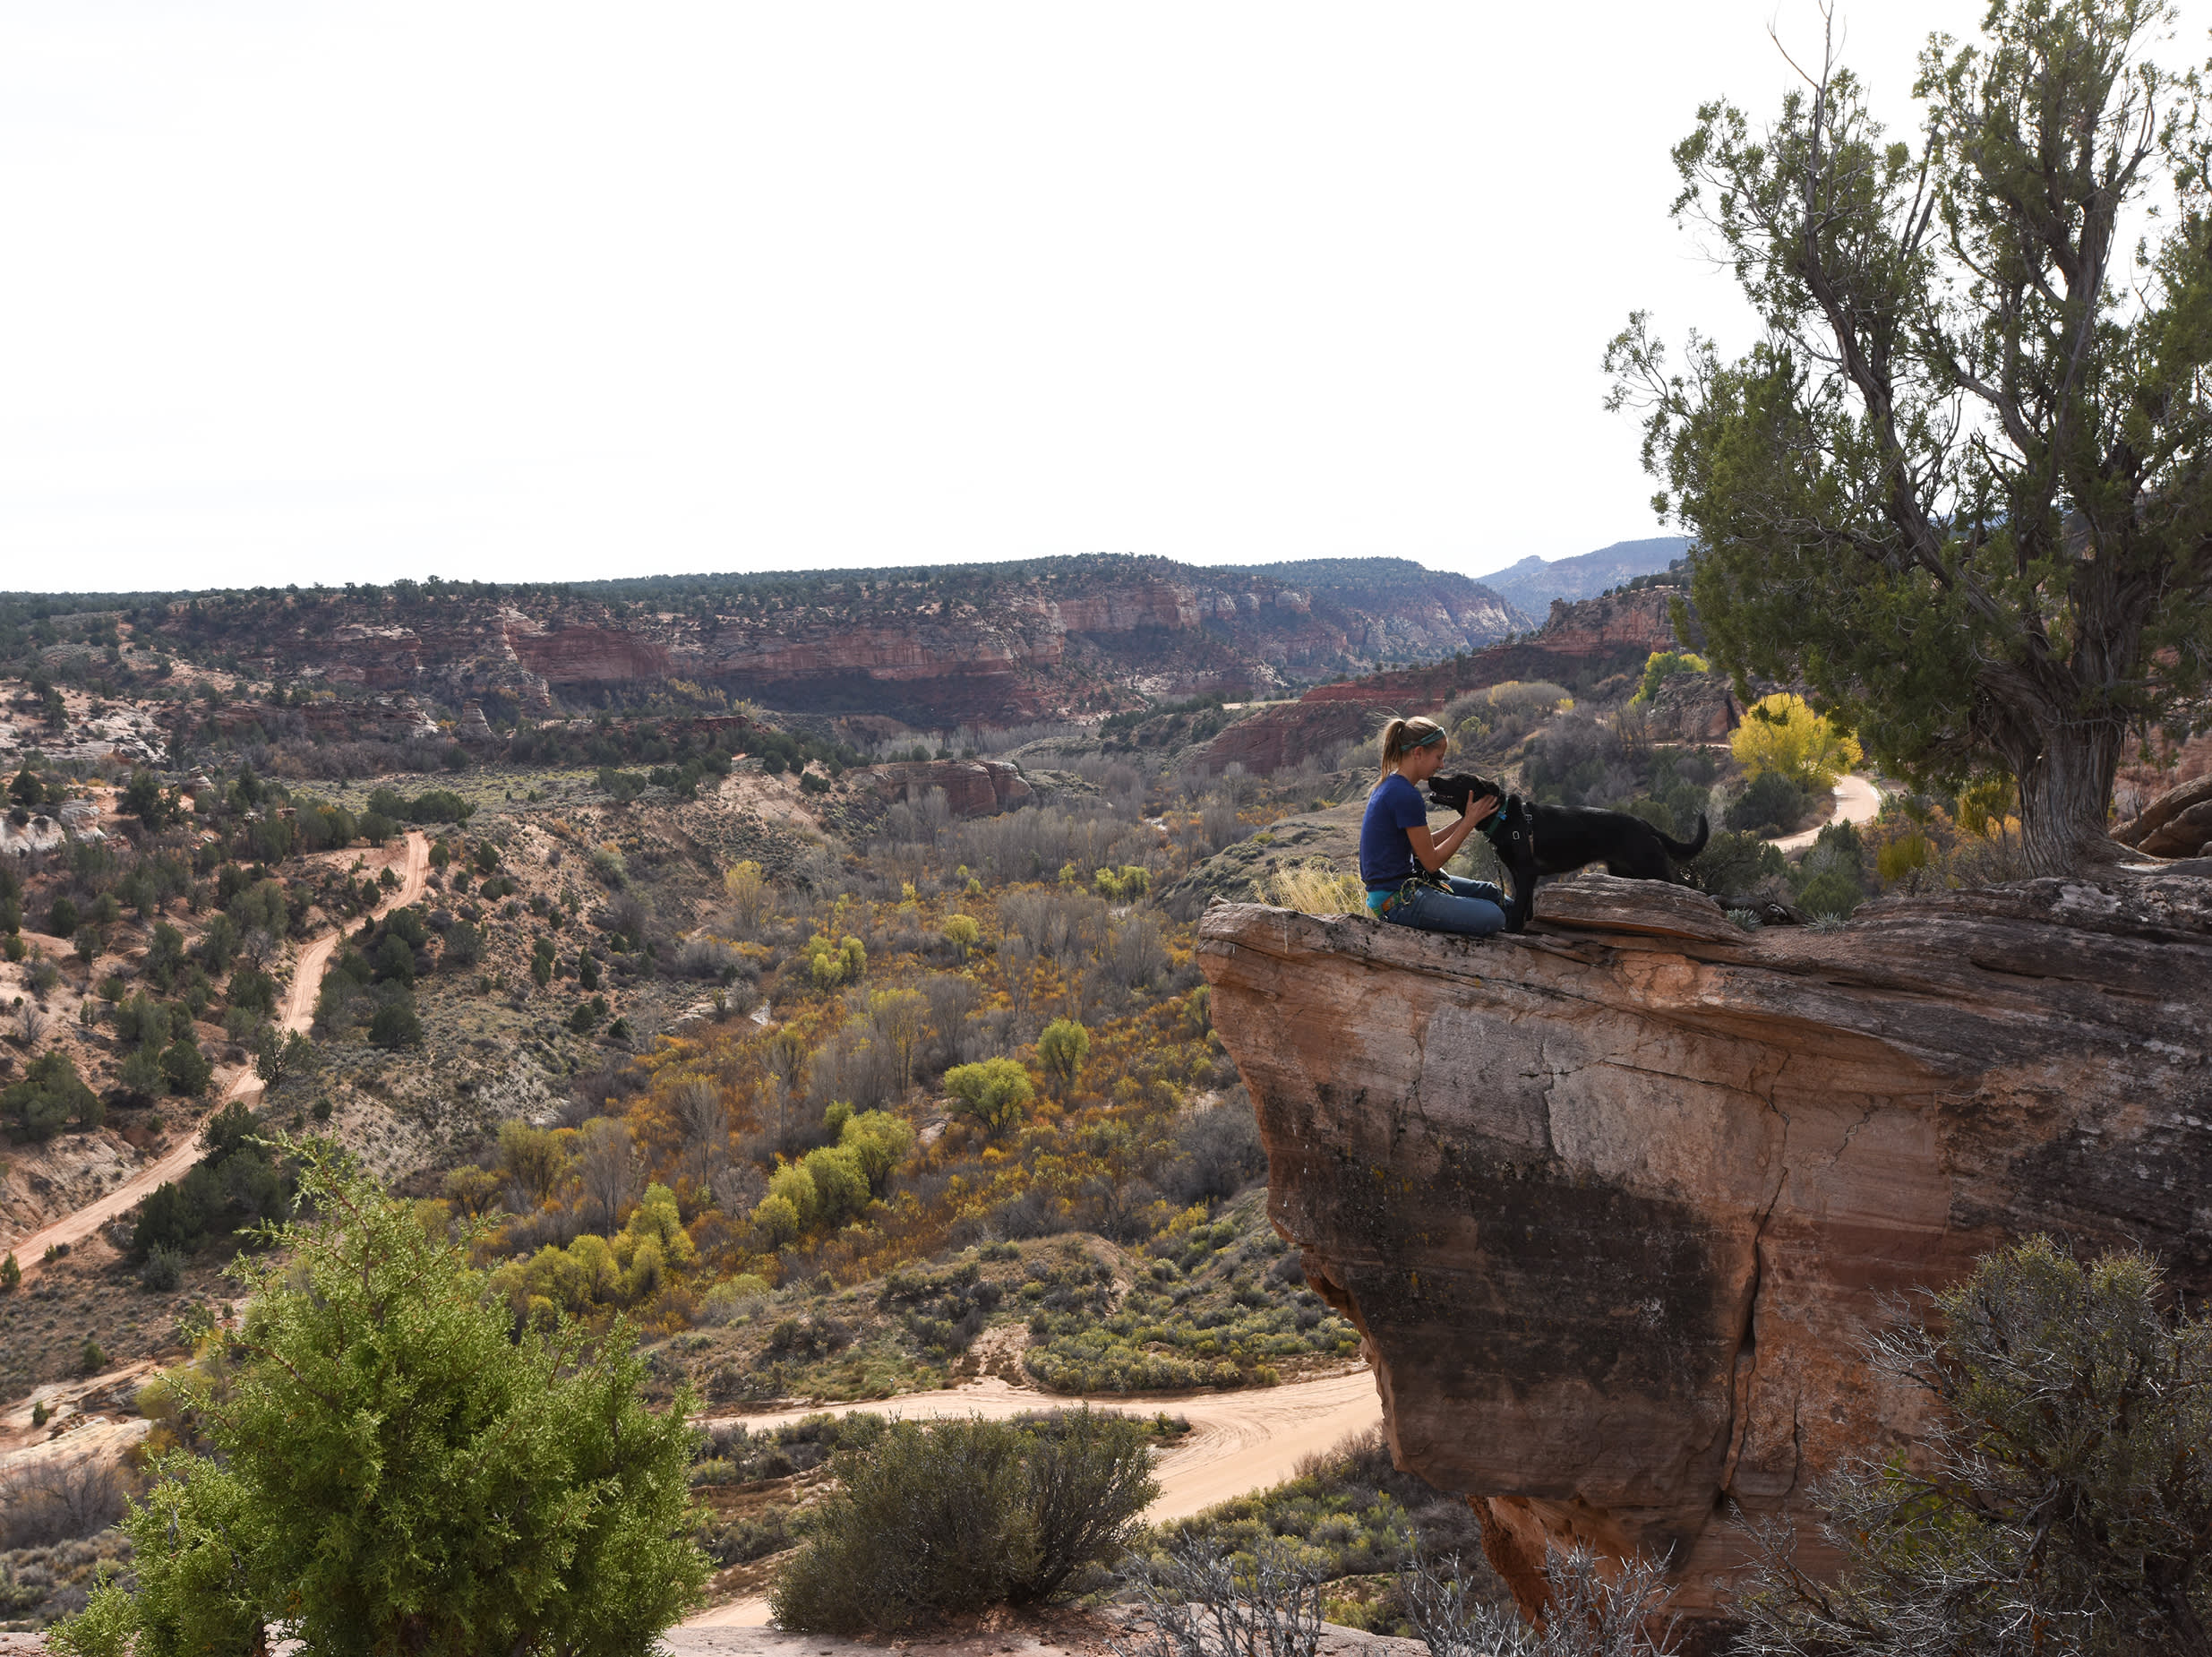 BestFriendsHeroImage - A woman pets a dog on a cliffside overlooking a desert canyon. 